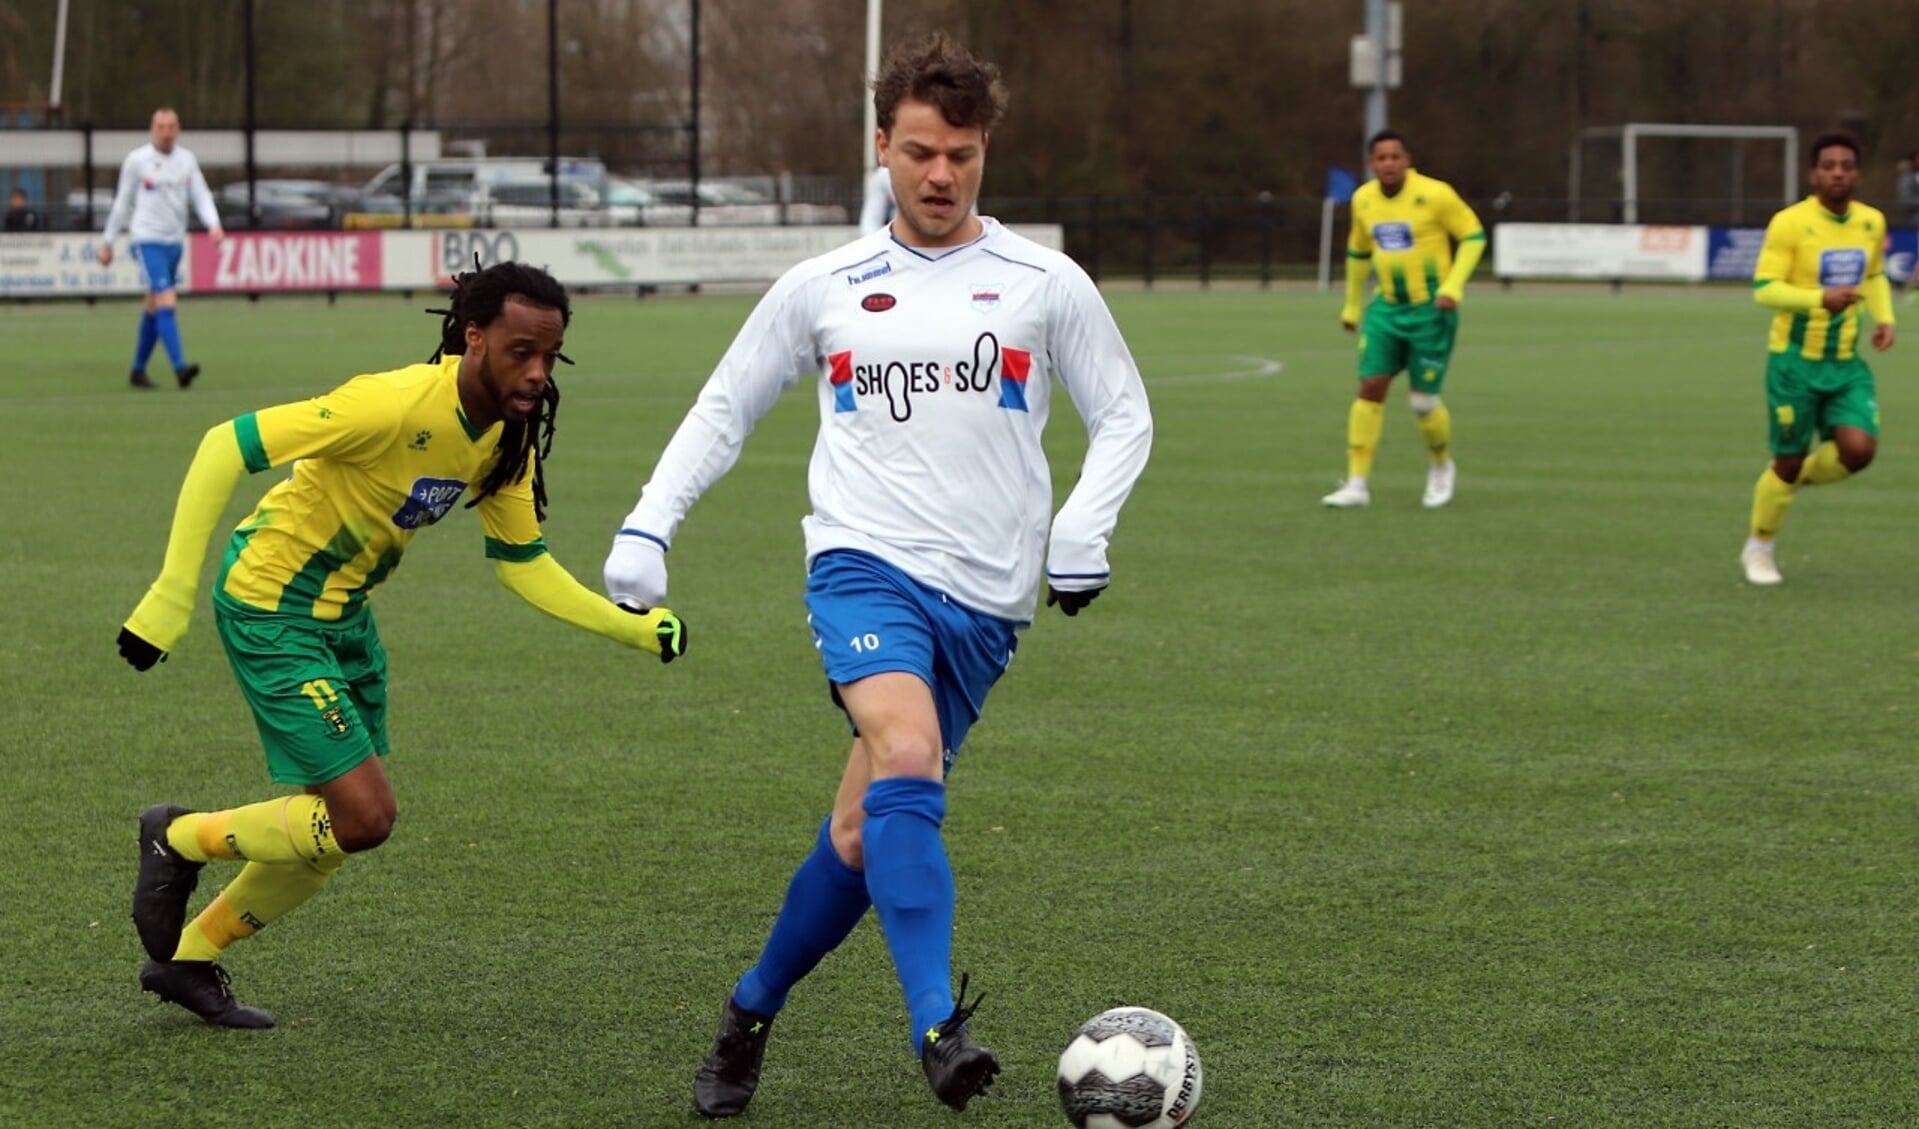 Jordy de Winter ontving in het duel met Rijnmond Hoogvliet Sport al na zeven minuten een rode kaart. 